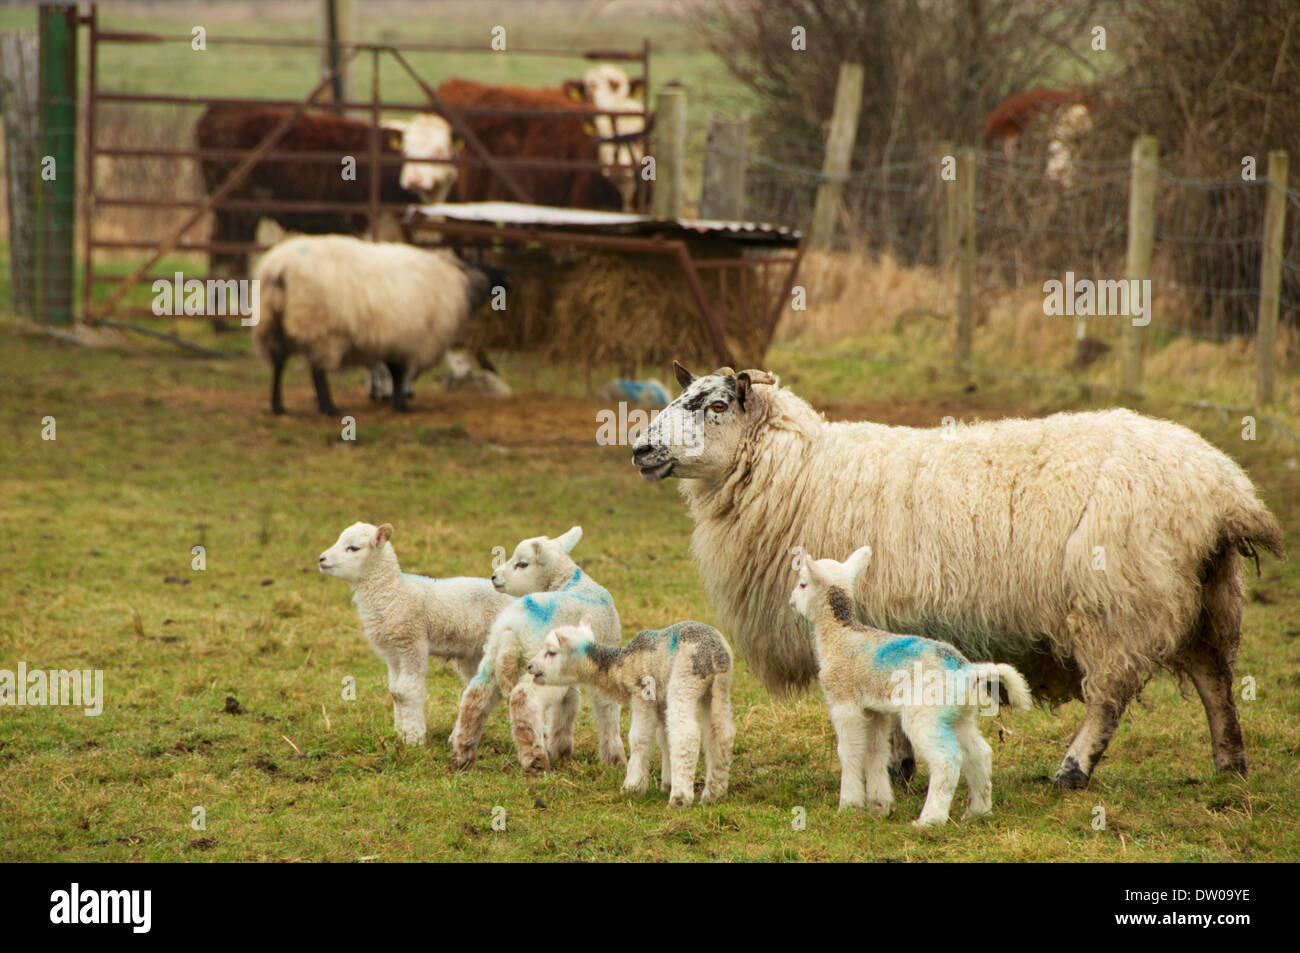 Les jeunes agneaux et moutons avec l'engraissement de bovins sur les terres agricoles dans l'ouest de l'Irlande. Banque D'Images